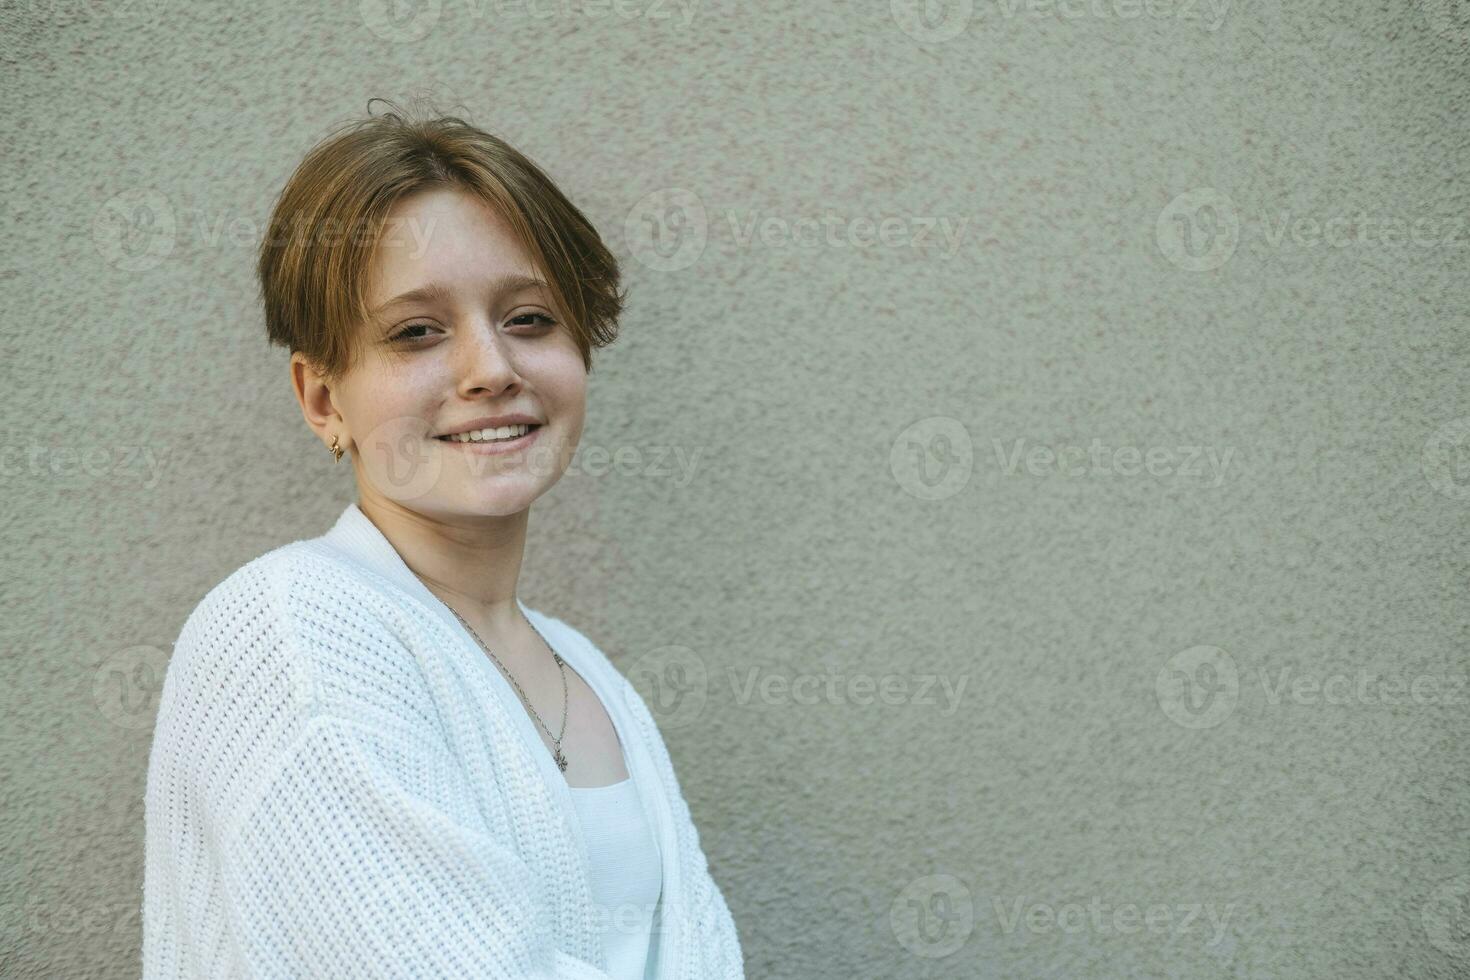 äventyrlig anda lyser genom porträtt av en Tonårs flicka med kort, röd hår, epitome av ungdom foto